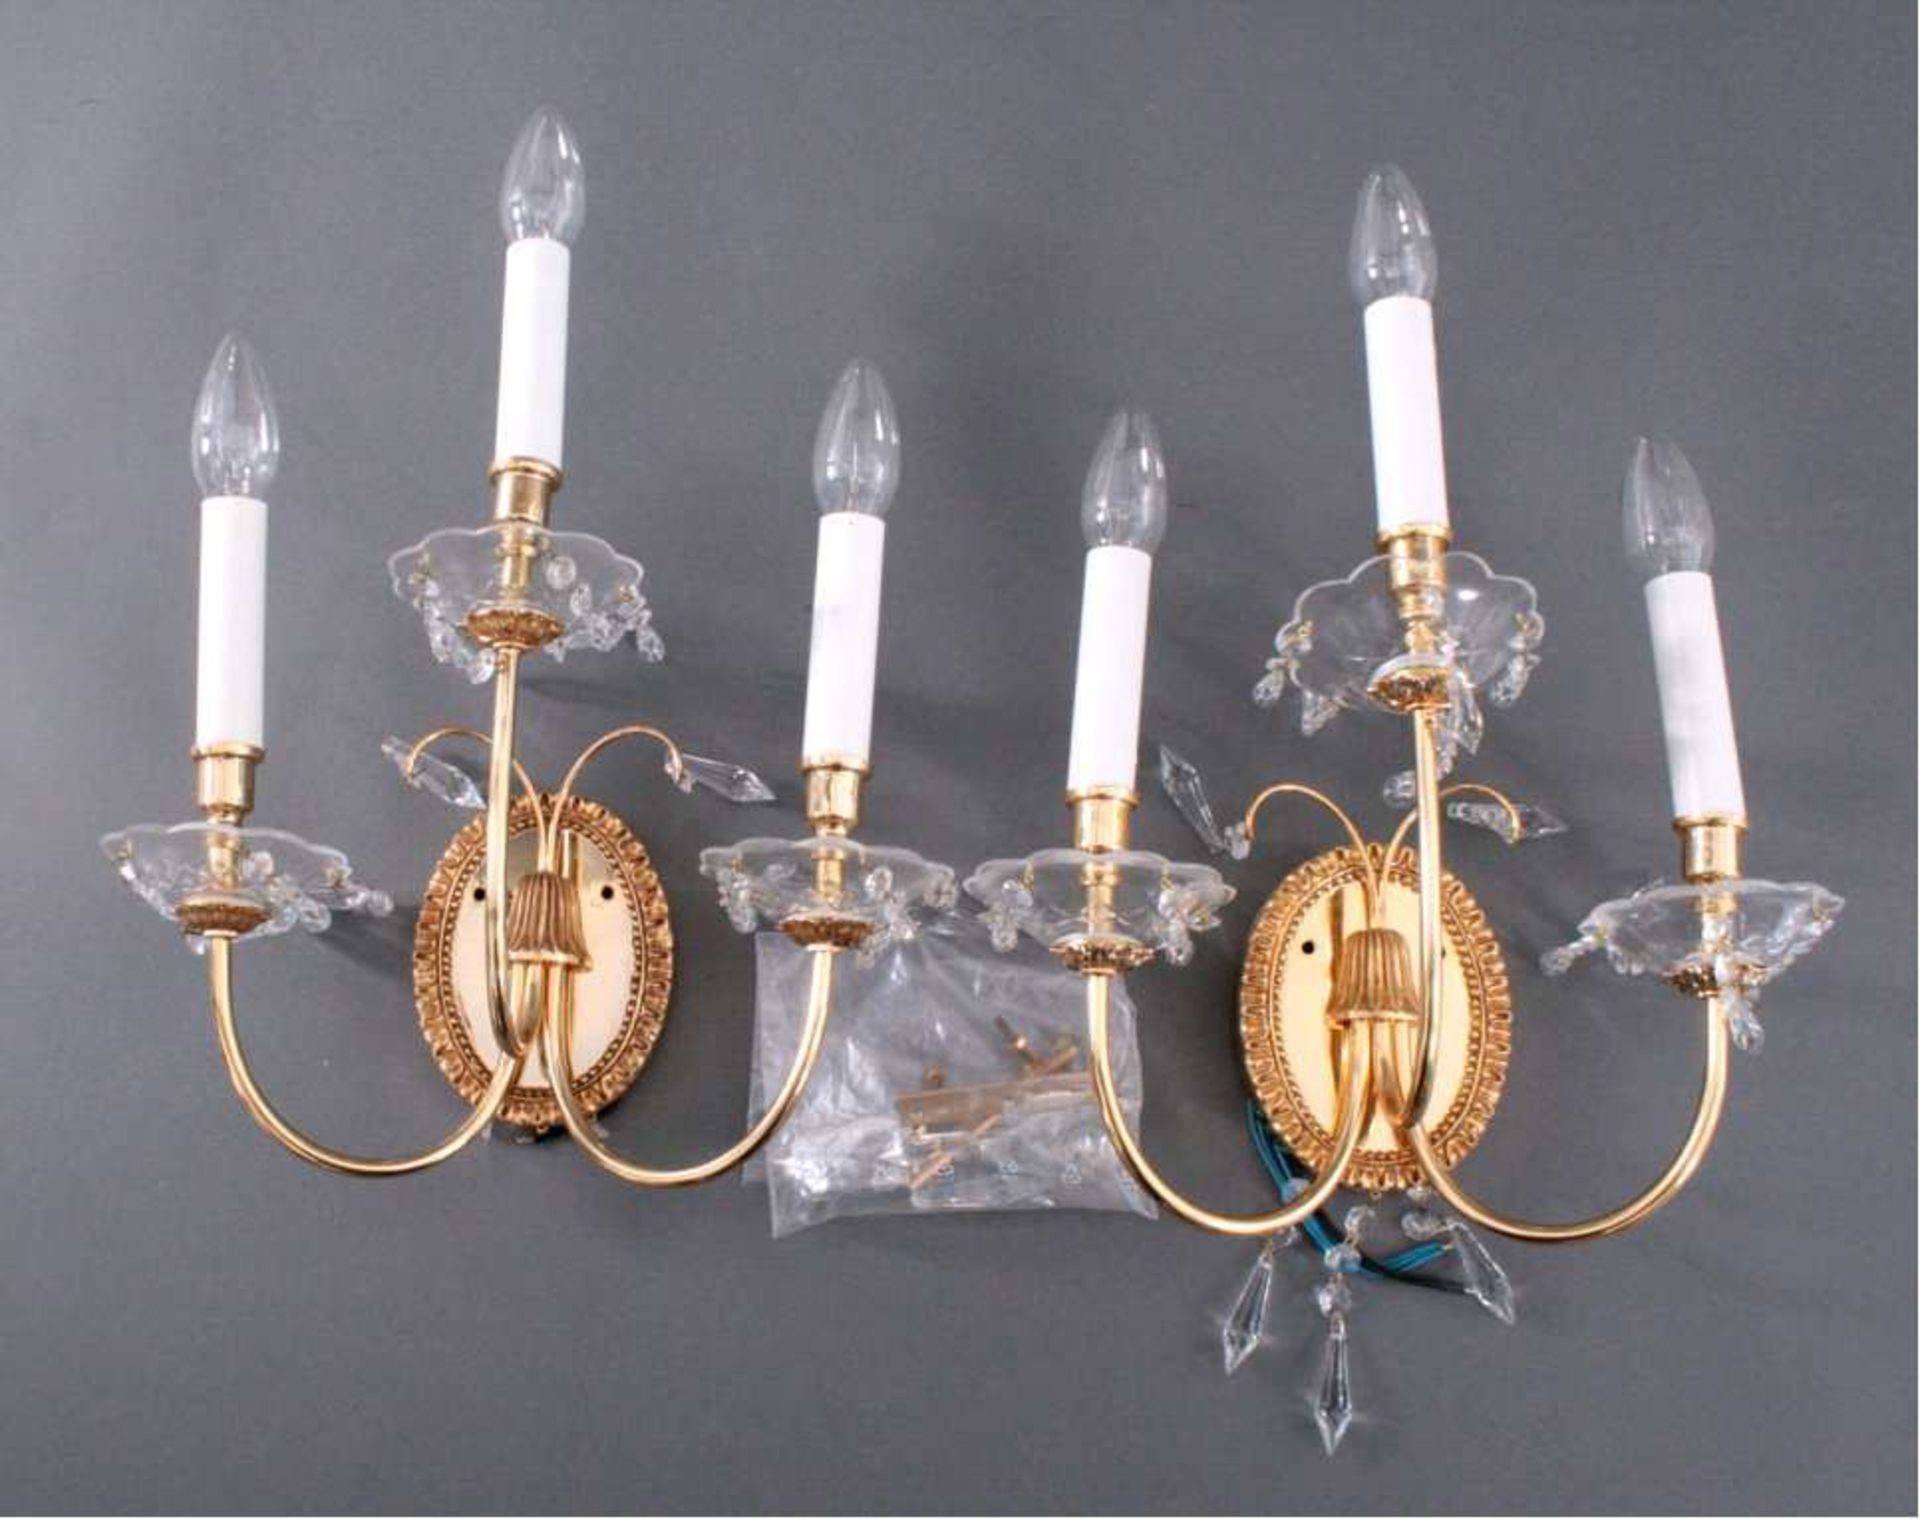 Paar prunkvolle Wandlampen 2. Hälfte 20. Jh.Messing vergoldet mit Prismen und Kristallzapfen,3-